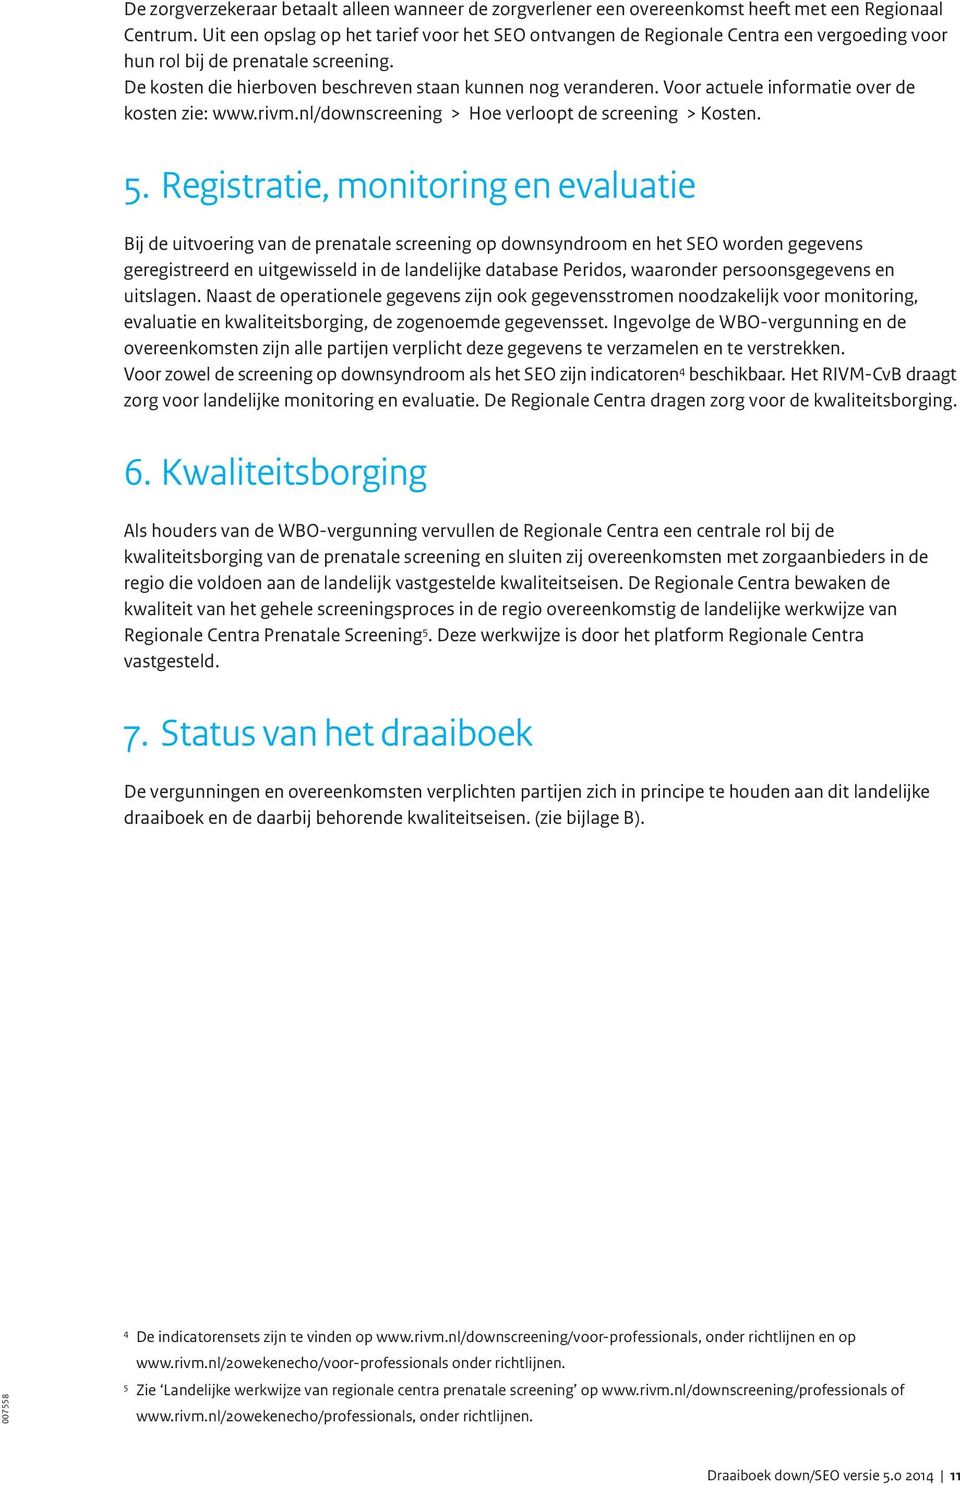 Voor actuele informatie over de kosten zie: www.rivm.nl/downscreening > Hoe verloopt de screening > Kosten. 5.